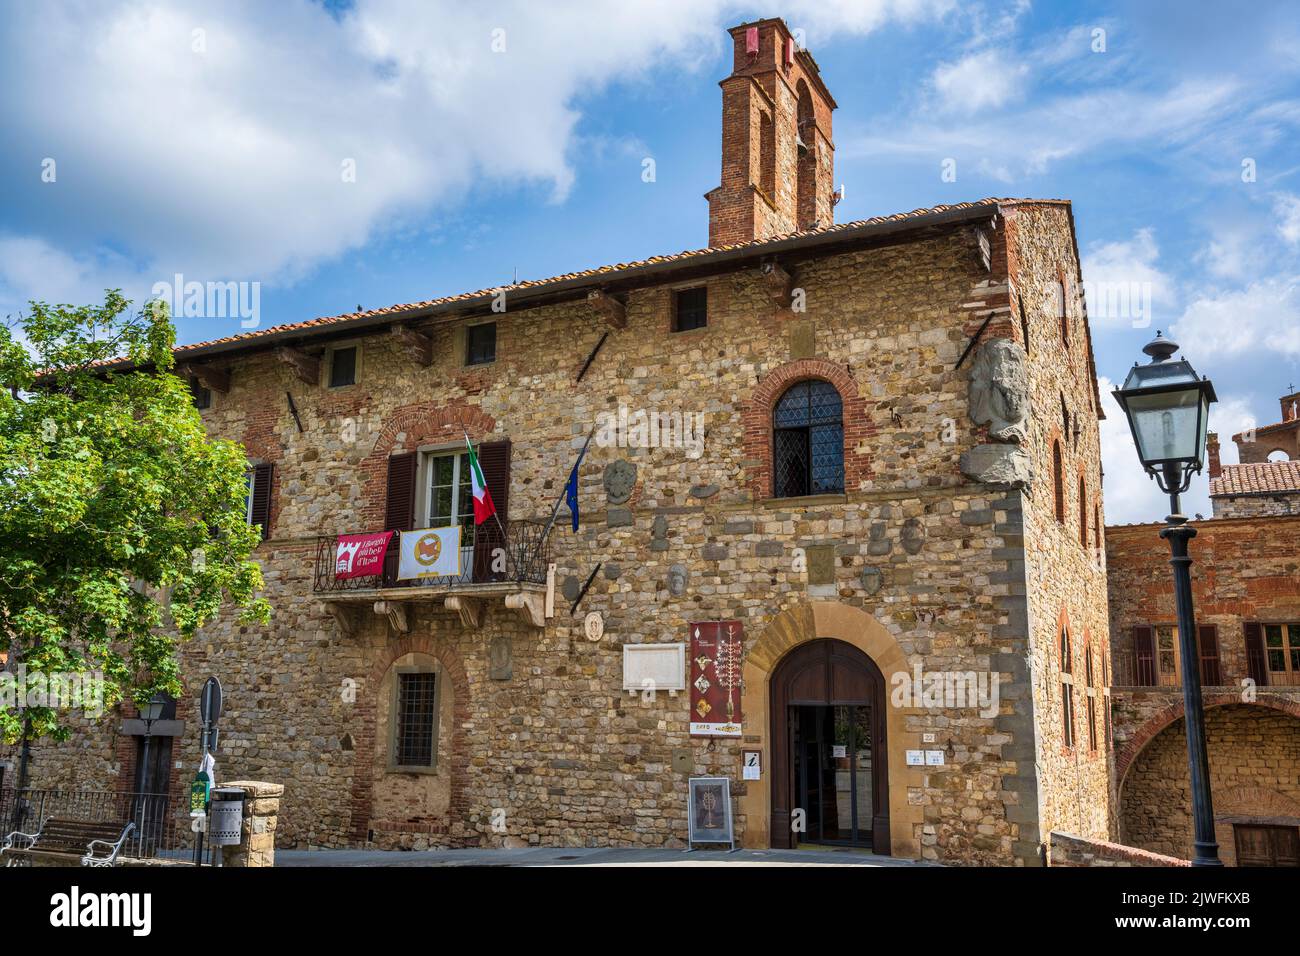 Museo di Lucignano (Palazzo del Comune) in the medieval hilltop town of Lucignano in the Val di Chiana in Tuscany, Italy Stock Photo